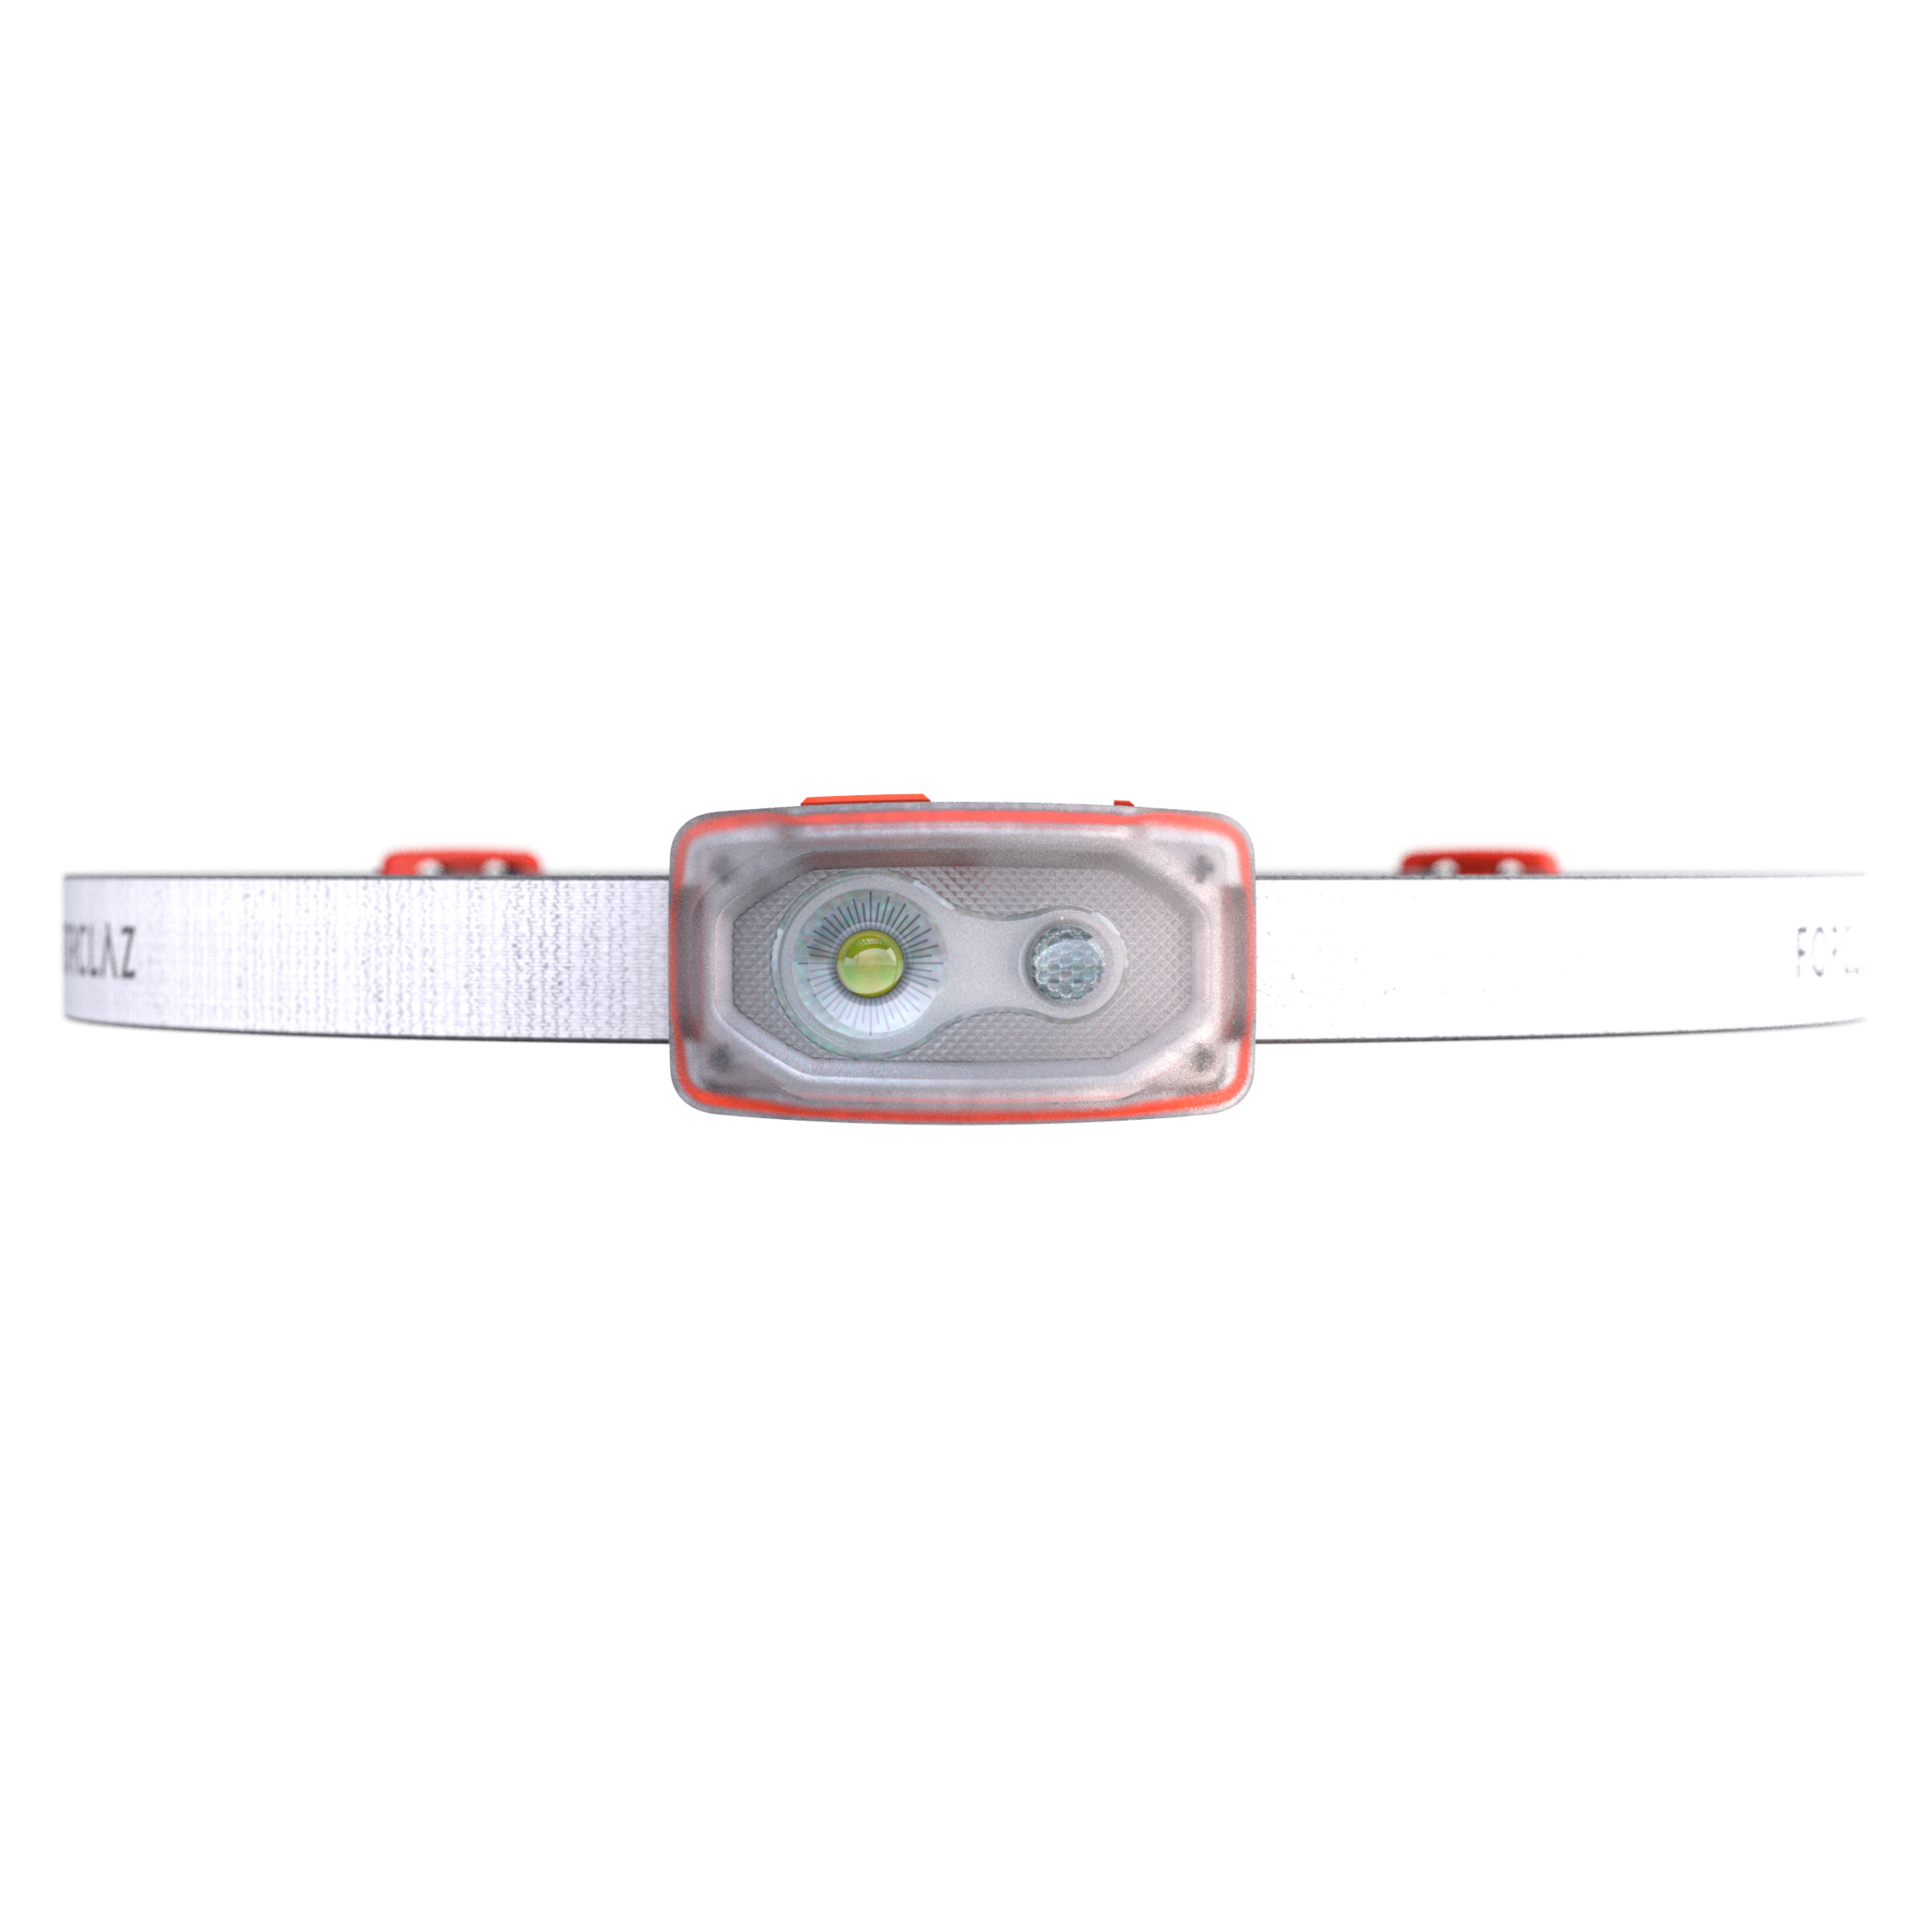 Lampe frontale rechargeable - 100 lumens - BIVOUAC 500 USB - DECATHLON El  Djazair